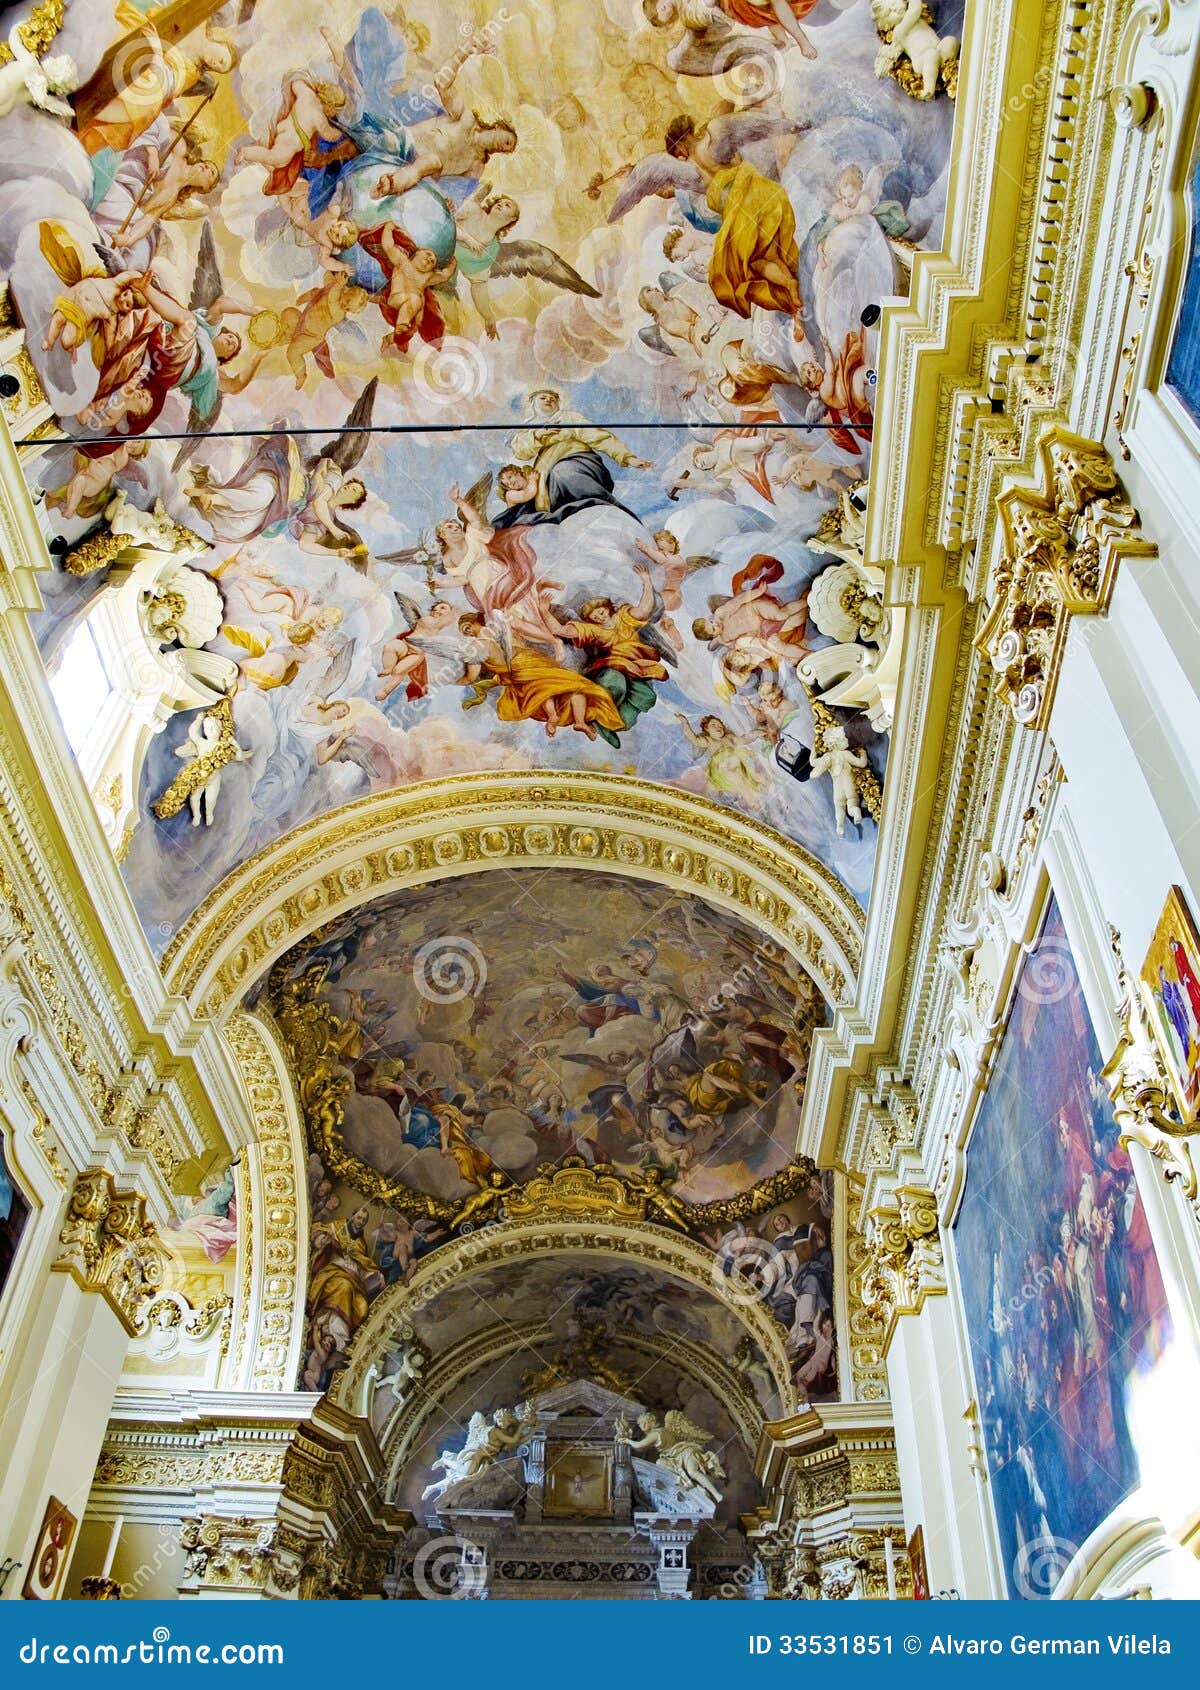 the crocifisso church in casa santuario di santa caterina. siena, italy